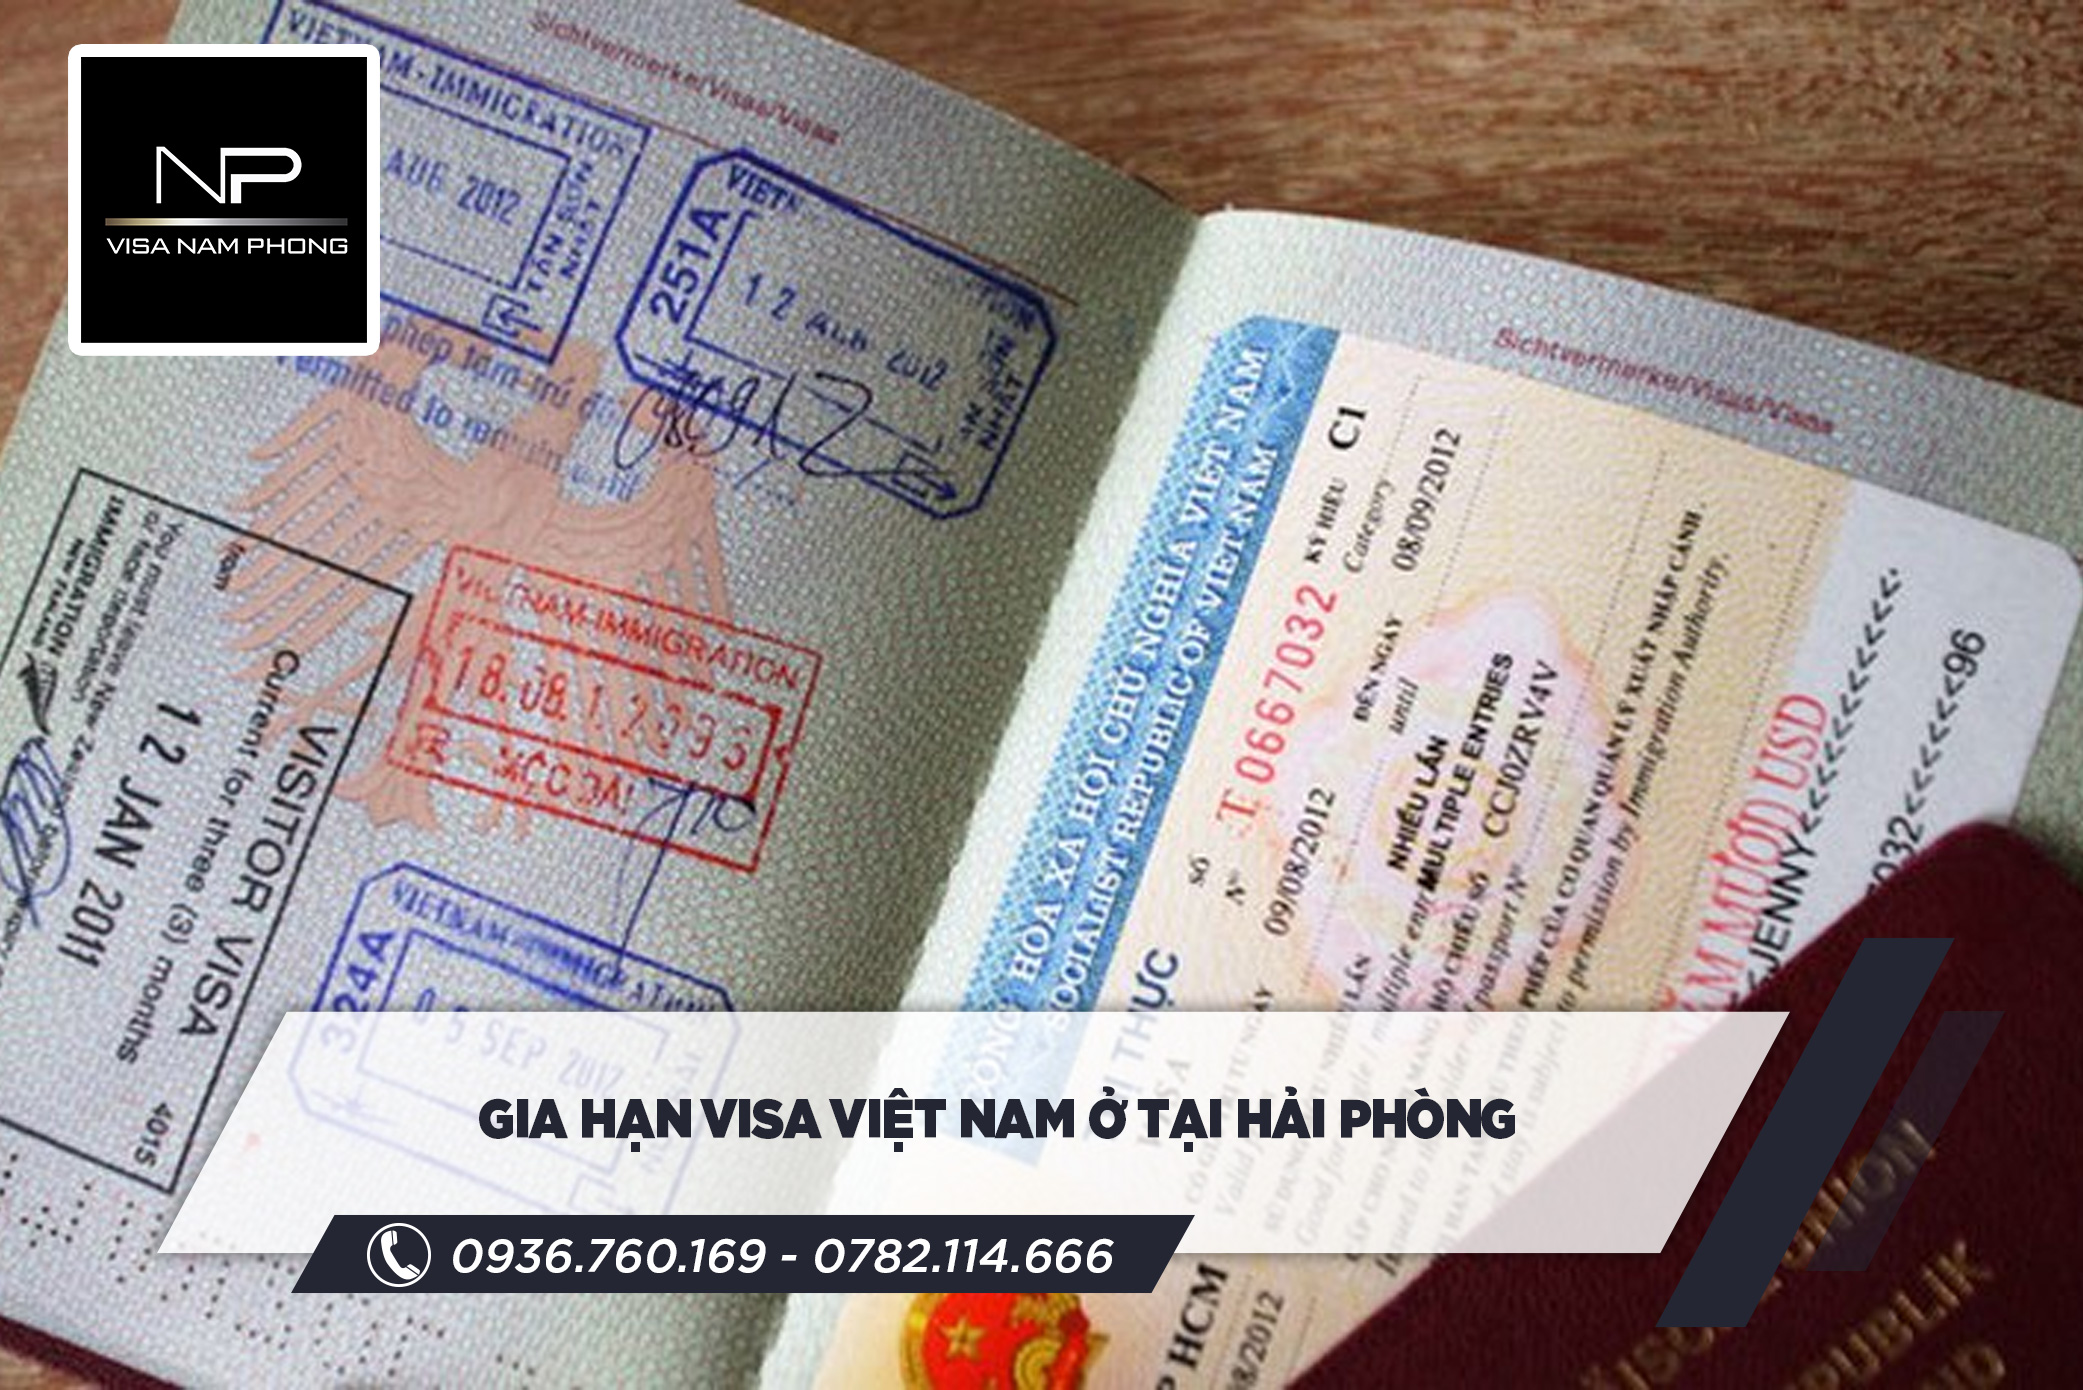 Gia hạn visa Việt Nam ở tại Hải Phòng